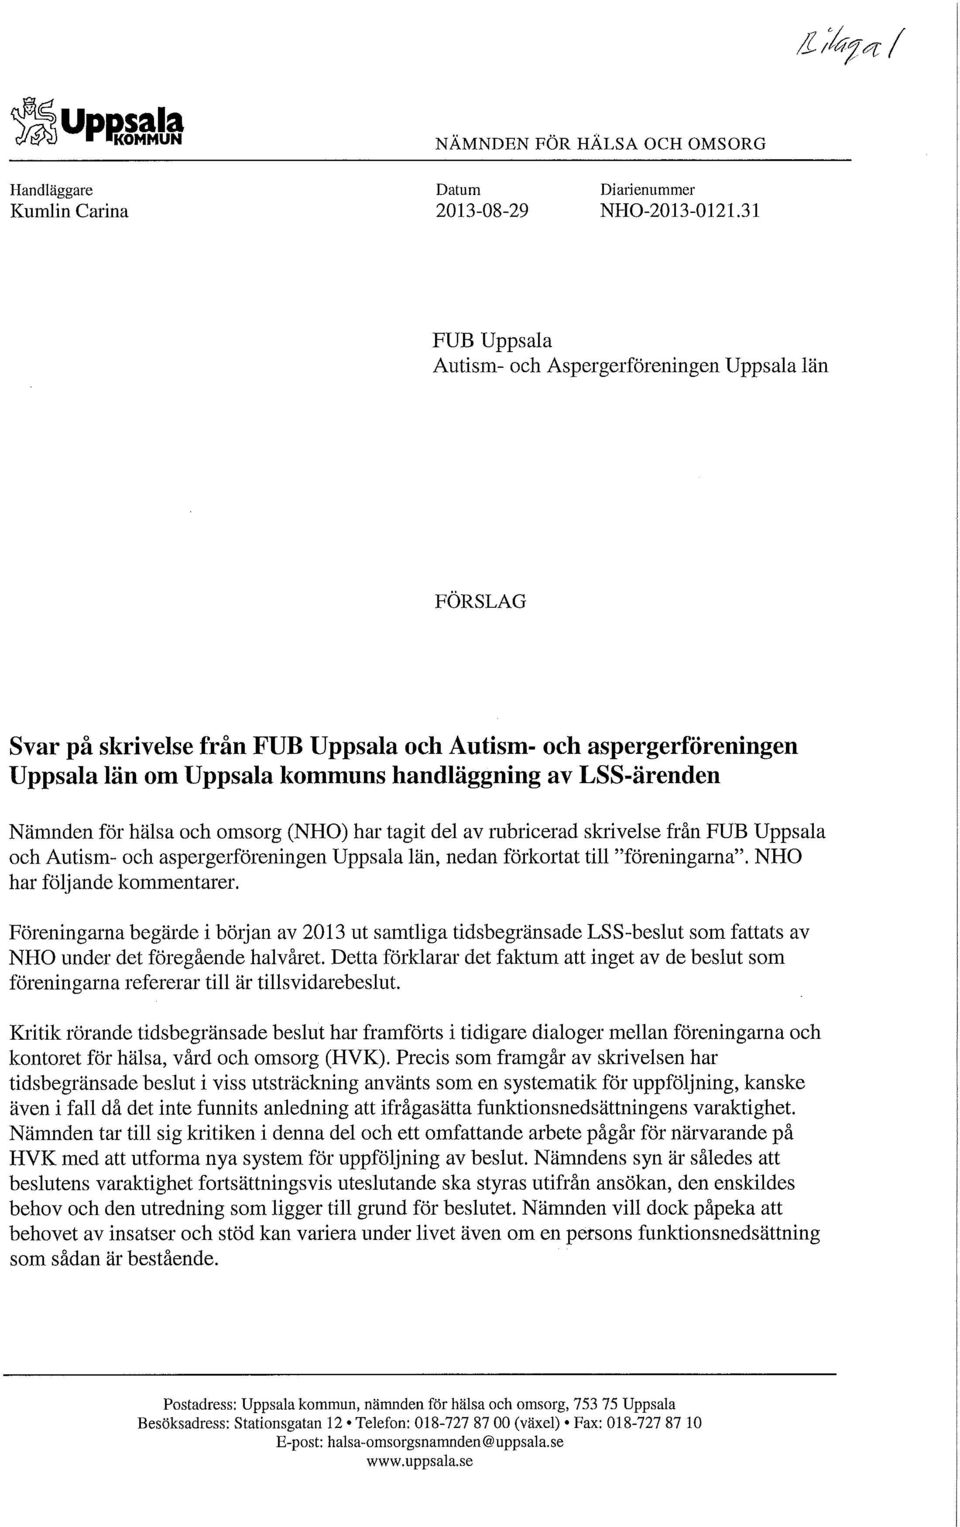 Nämnden för hälsa och omsorg (NHO) har tagit del av rubricerad skrivelse från FUB Uppsala och Autism- och aspergerföreningen Uppsala län, nedan förkortat till "föreningarna".